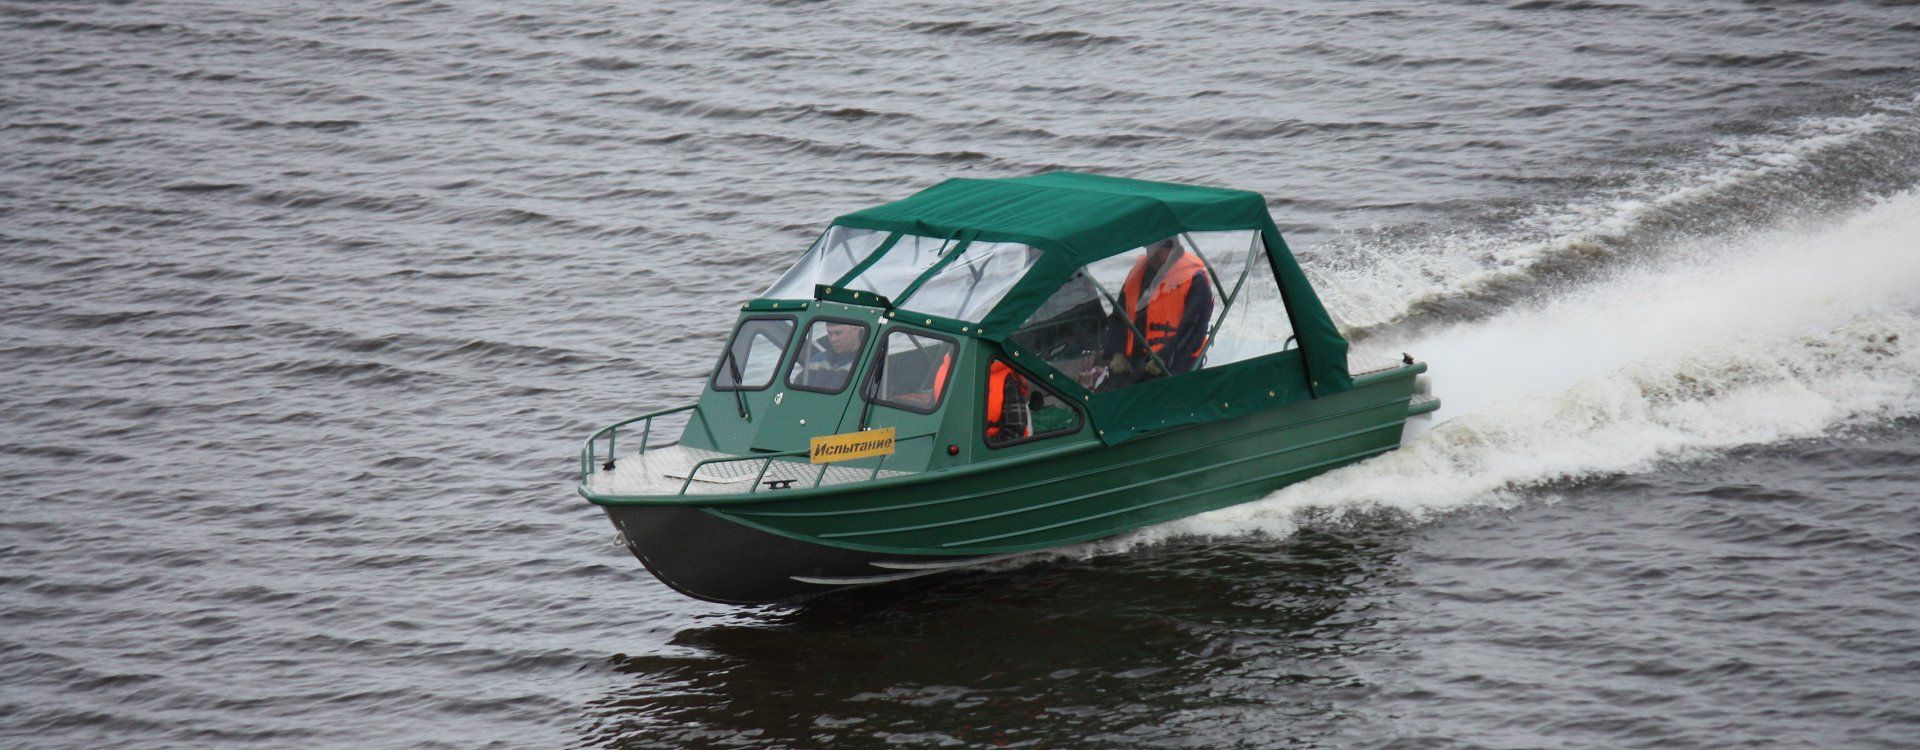 Моторная лодка КС-Фьорд 62Р - фото 2